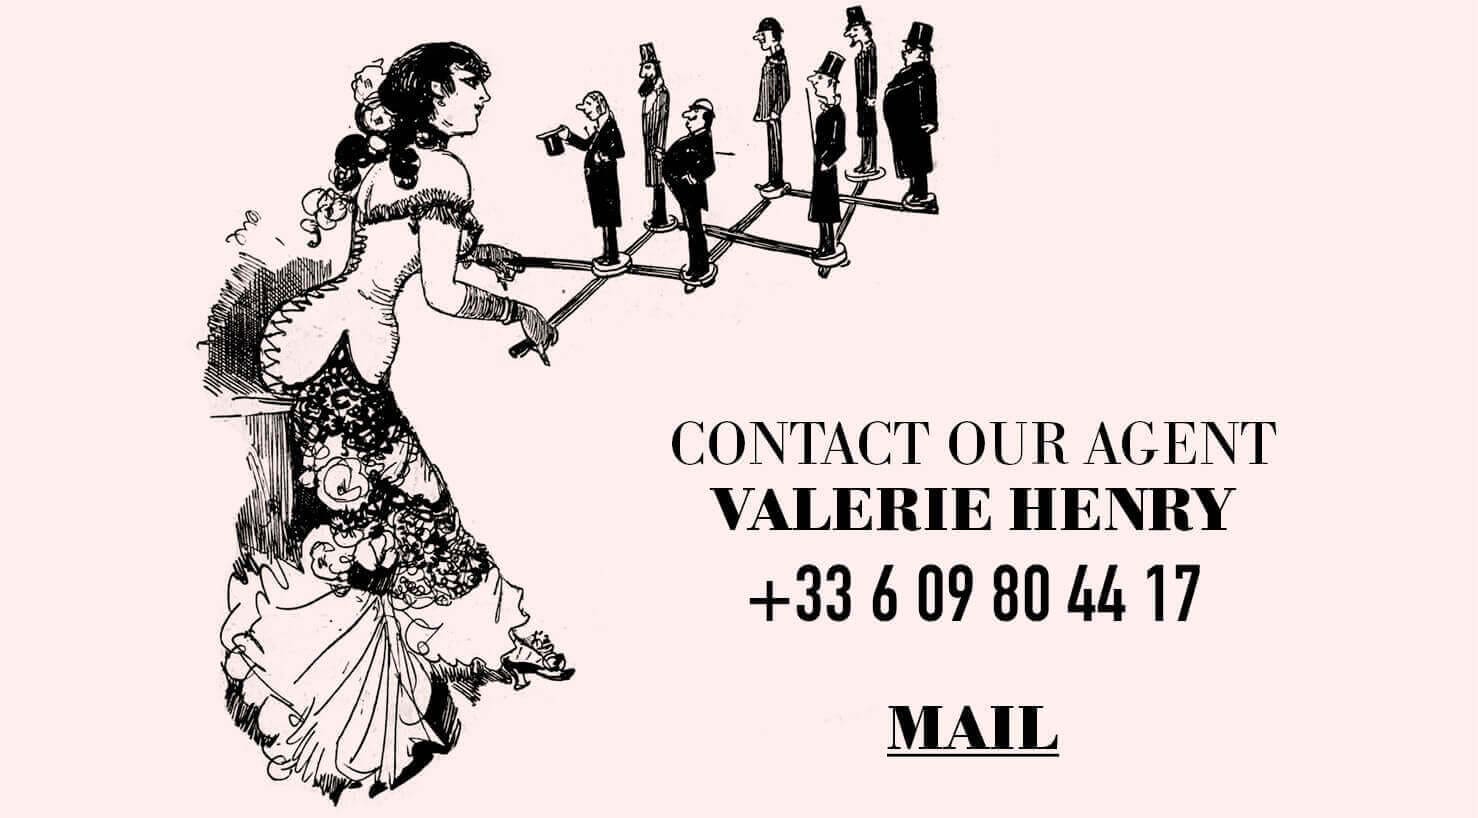 Contactez notre agent Valérie Henry +33 6 09 80 44 17